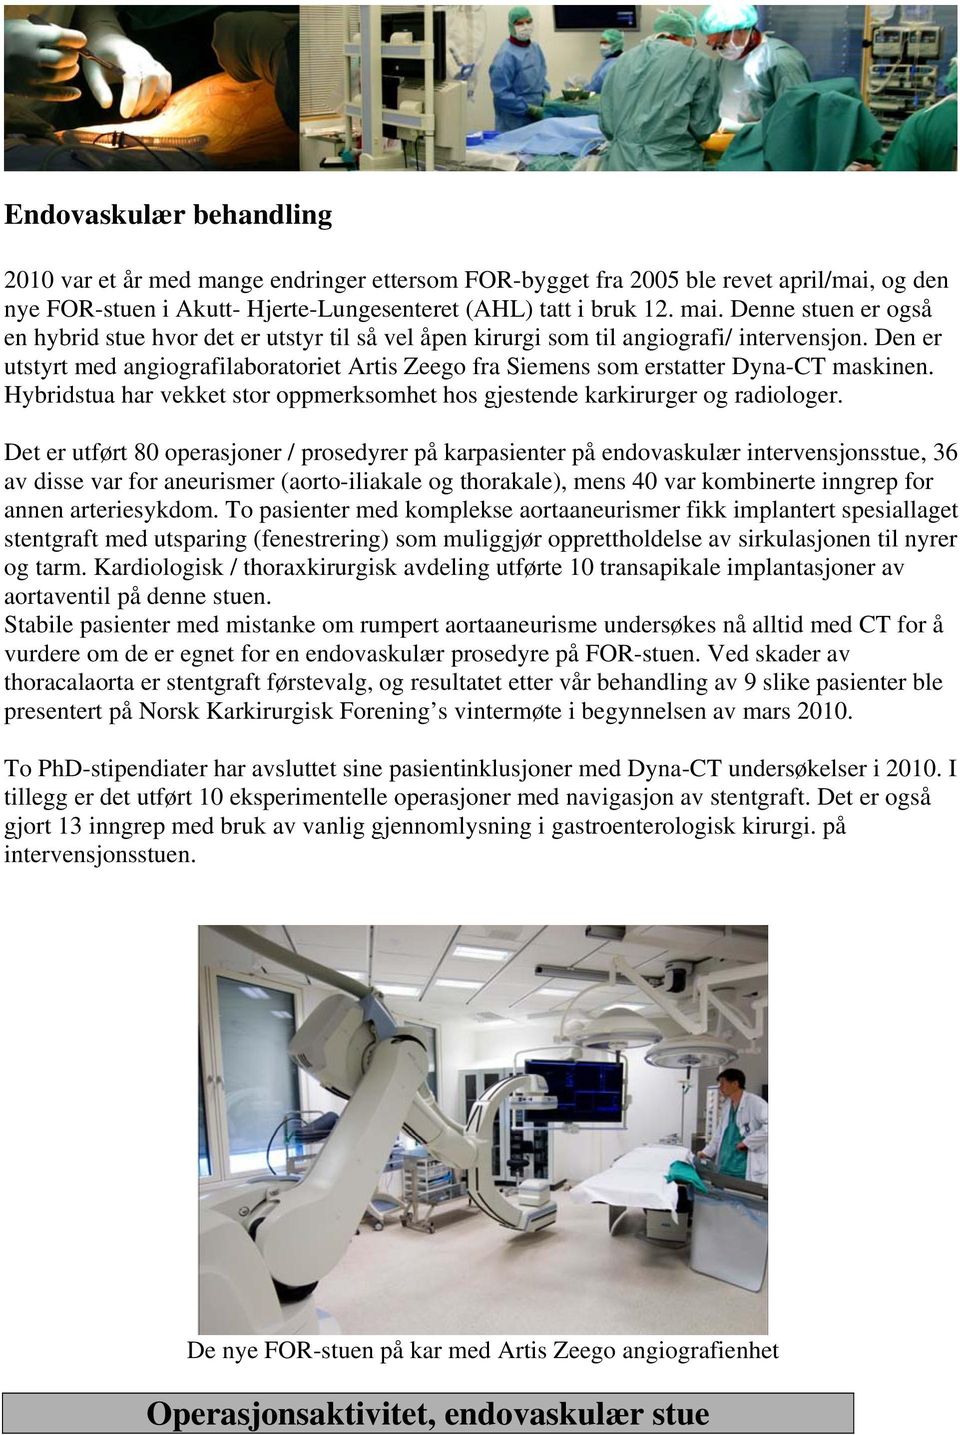 Den er utstyrt med angiografilaboratoriet Artis Zeego fra Siemens som erstatter Dyna-CT maskinen. Hybridstua har vekket stor oppmerksomhet hos gjestende karkirurger og radiologer.